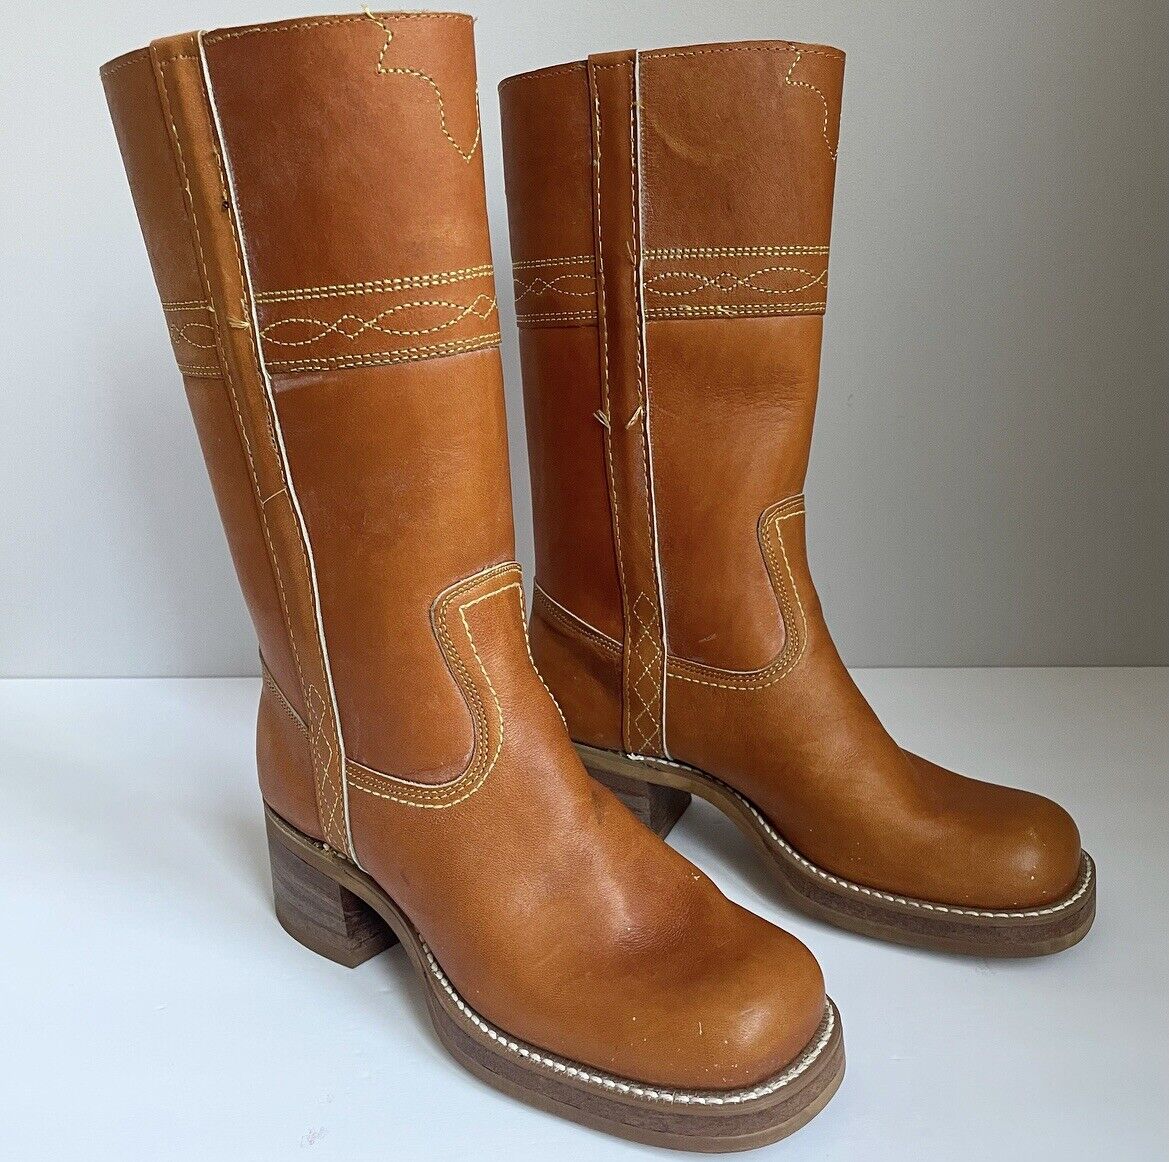 Vintage 1970’s Leather Frye Campus Boots Us Ladies 5.5 Medium Width